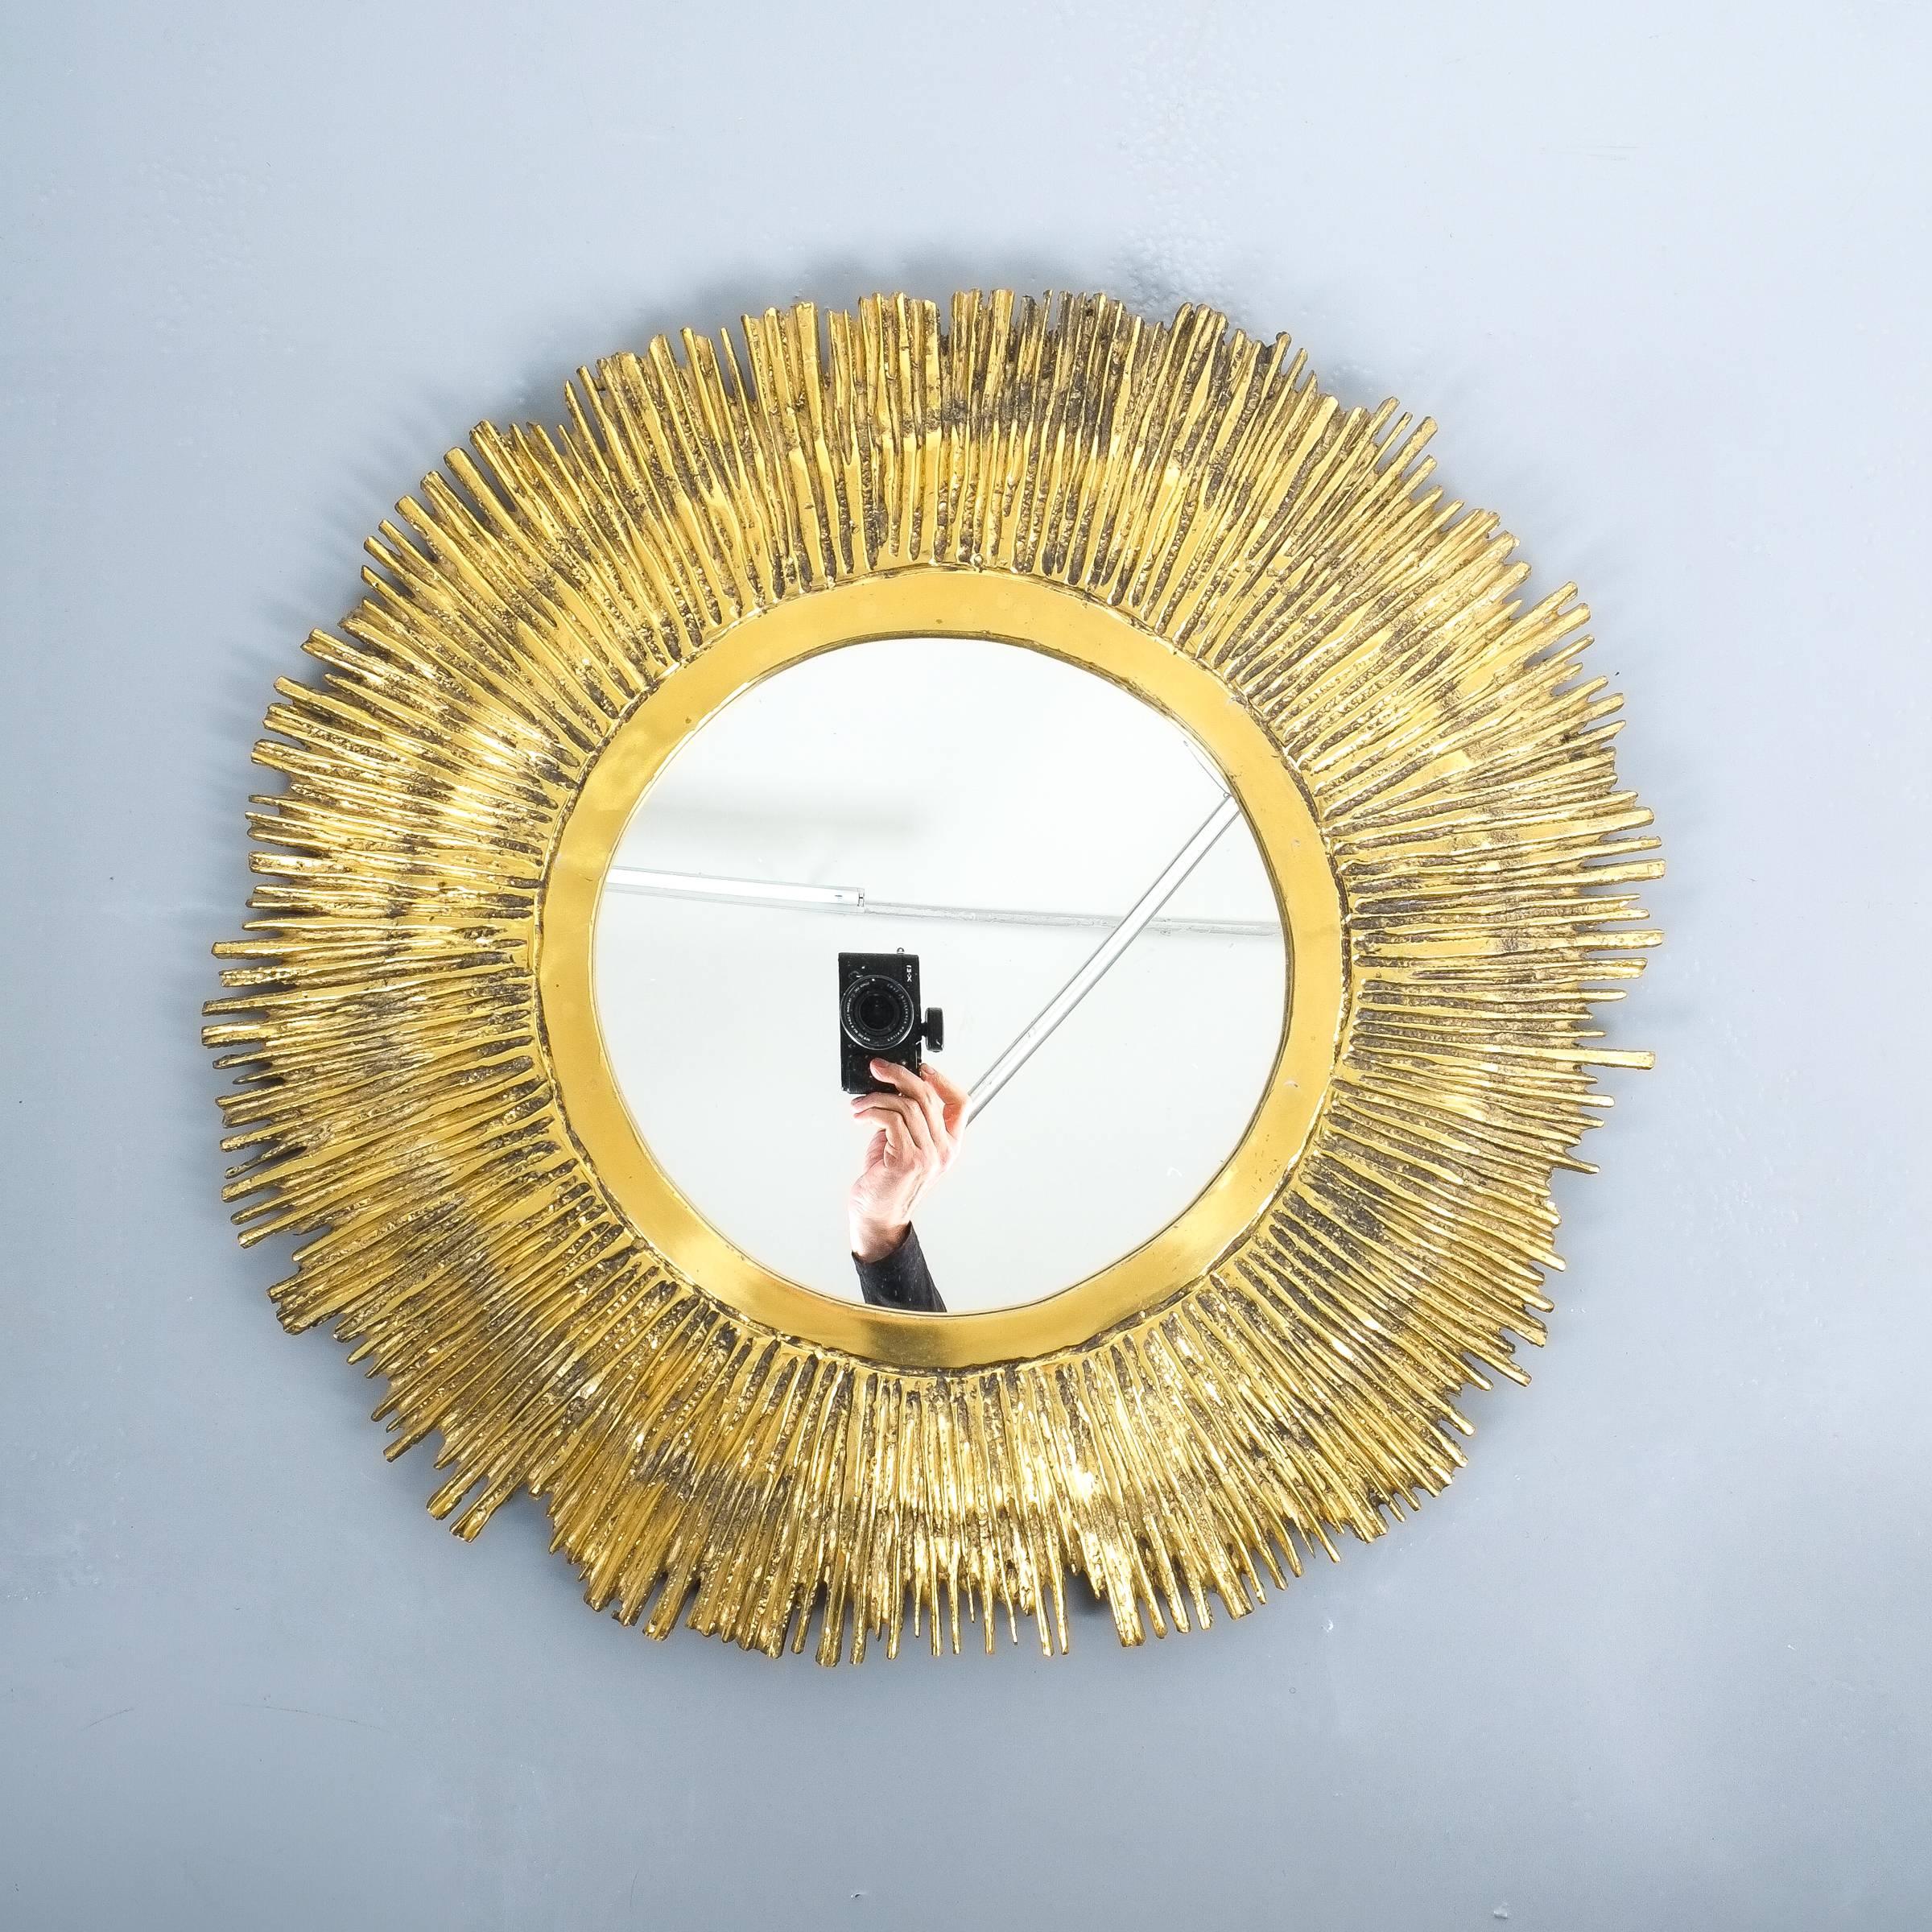 Beeindruckender 24-Zoll-Spiegel aus massivem Messing, im Stil von Curtis Jere, um 1955, mit einem handgefertigten schweren und massiven Messinggussrahmen mit einer 11,8-Zoll-Spiegeleinlage. Der Spiegel wiegt ca. 8-10 kg. Sehr guter Zustand.